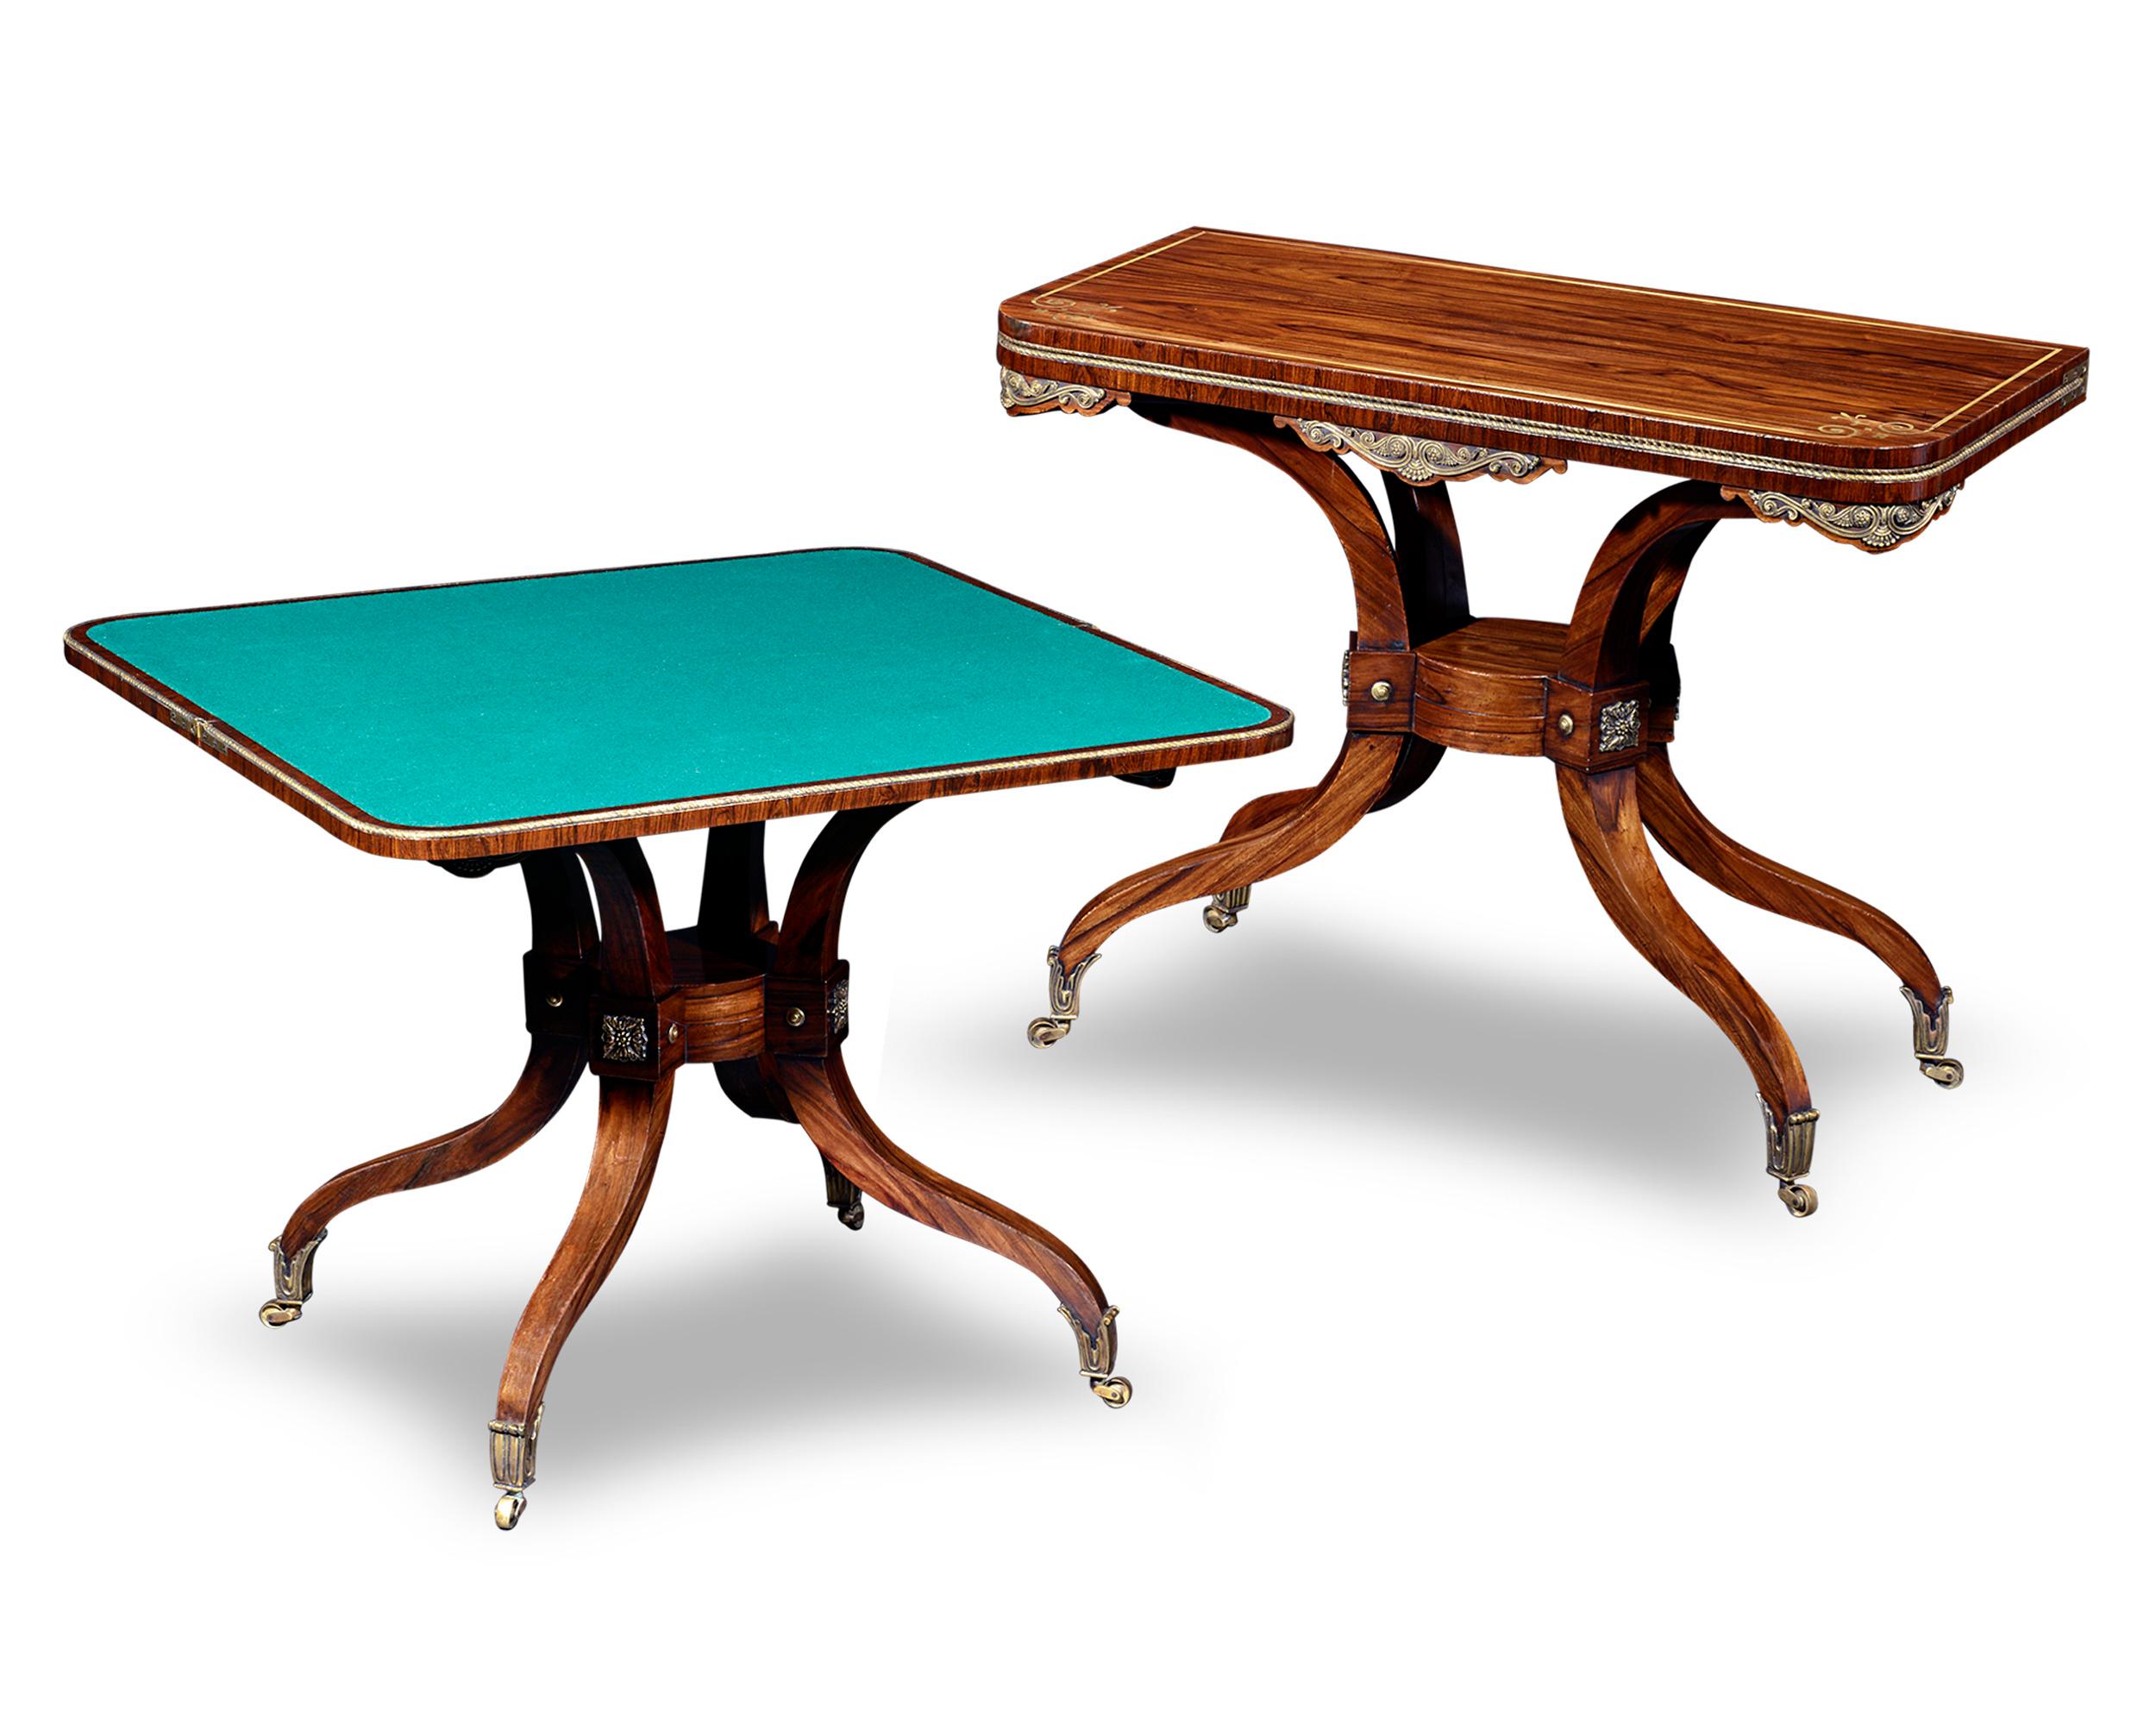 Diese außergewöhnlichen Regency-Kartentische wurden für einen doppelten Zweck entworfen. Die aus Palisanderholz gefertigten Tische dienen im geschlossenen Zustand als attraktive Konsolentische. Beim Öffnen verwandeln sich die Tische schnell in eine